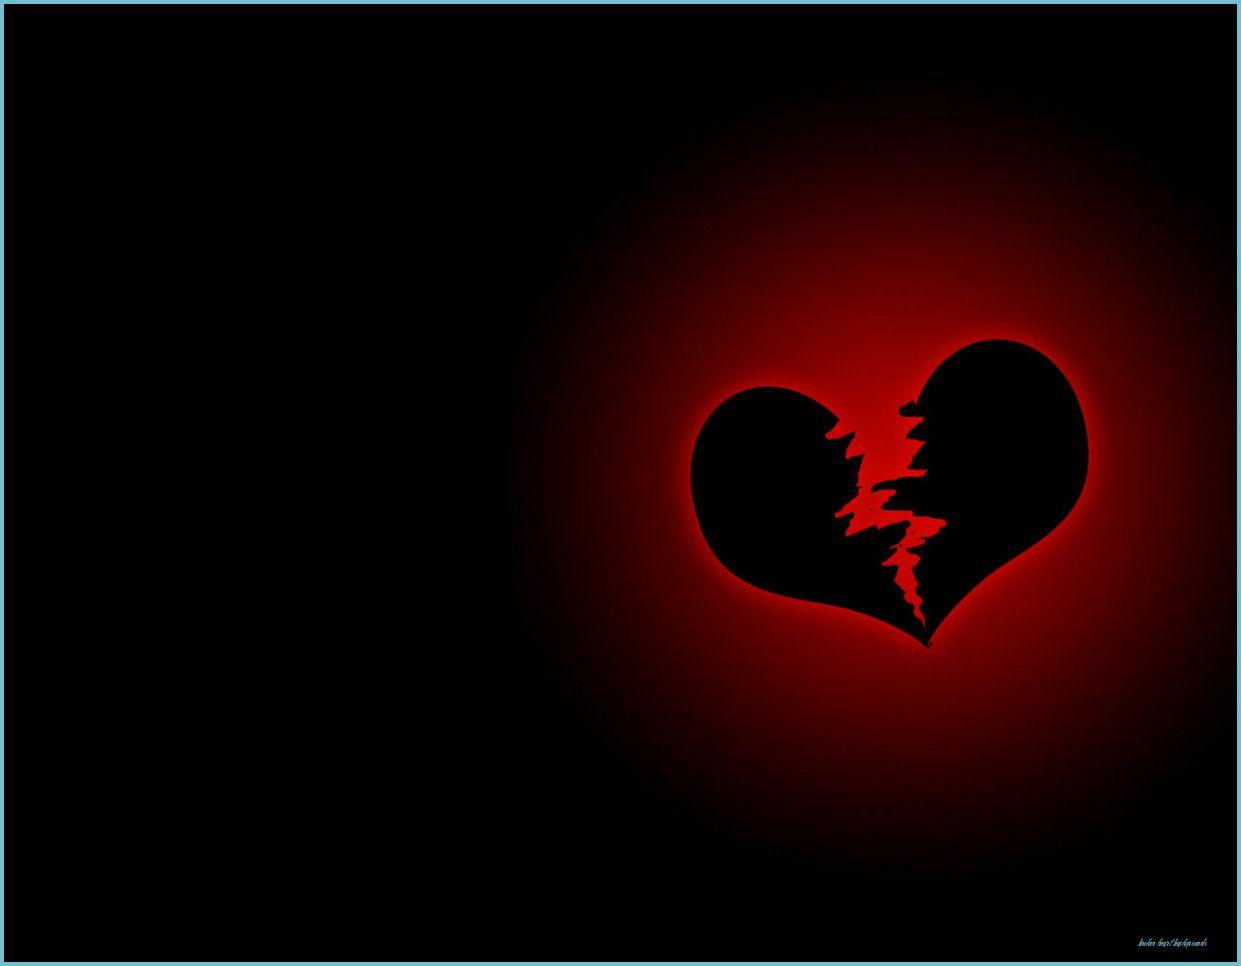 Broken black heart - broken heart, broken... - Stock Illustration  [93794877] - PIXTA